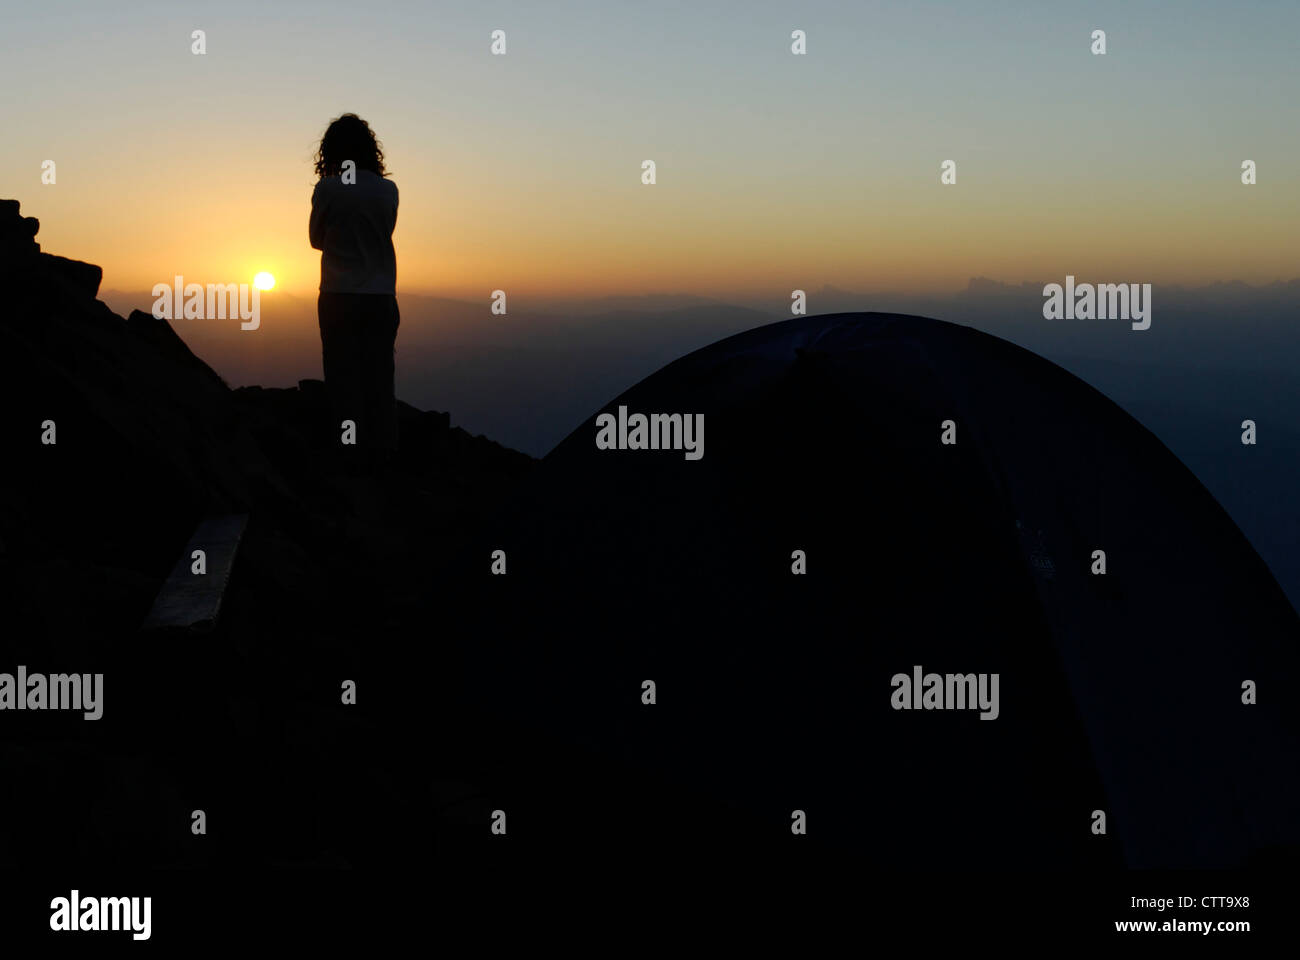 Frau sucht Frau Betrachtet Raummotive Neben Zelt zum Sonnenaufgang in der Nähe von Zelt Stockfoto